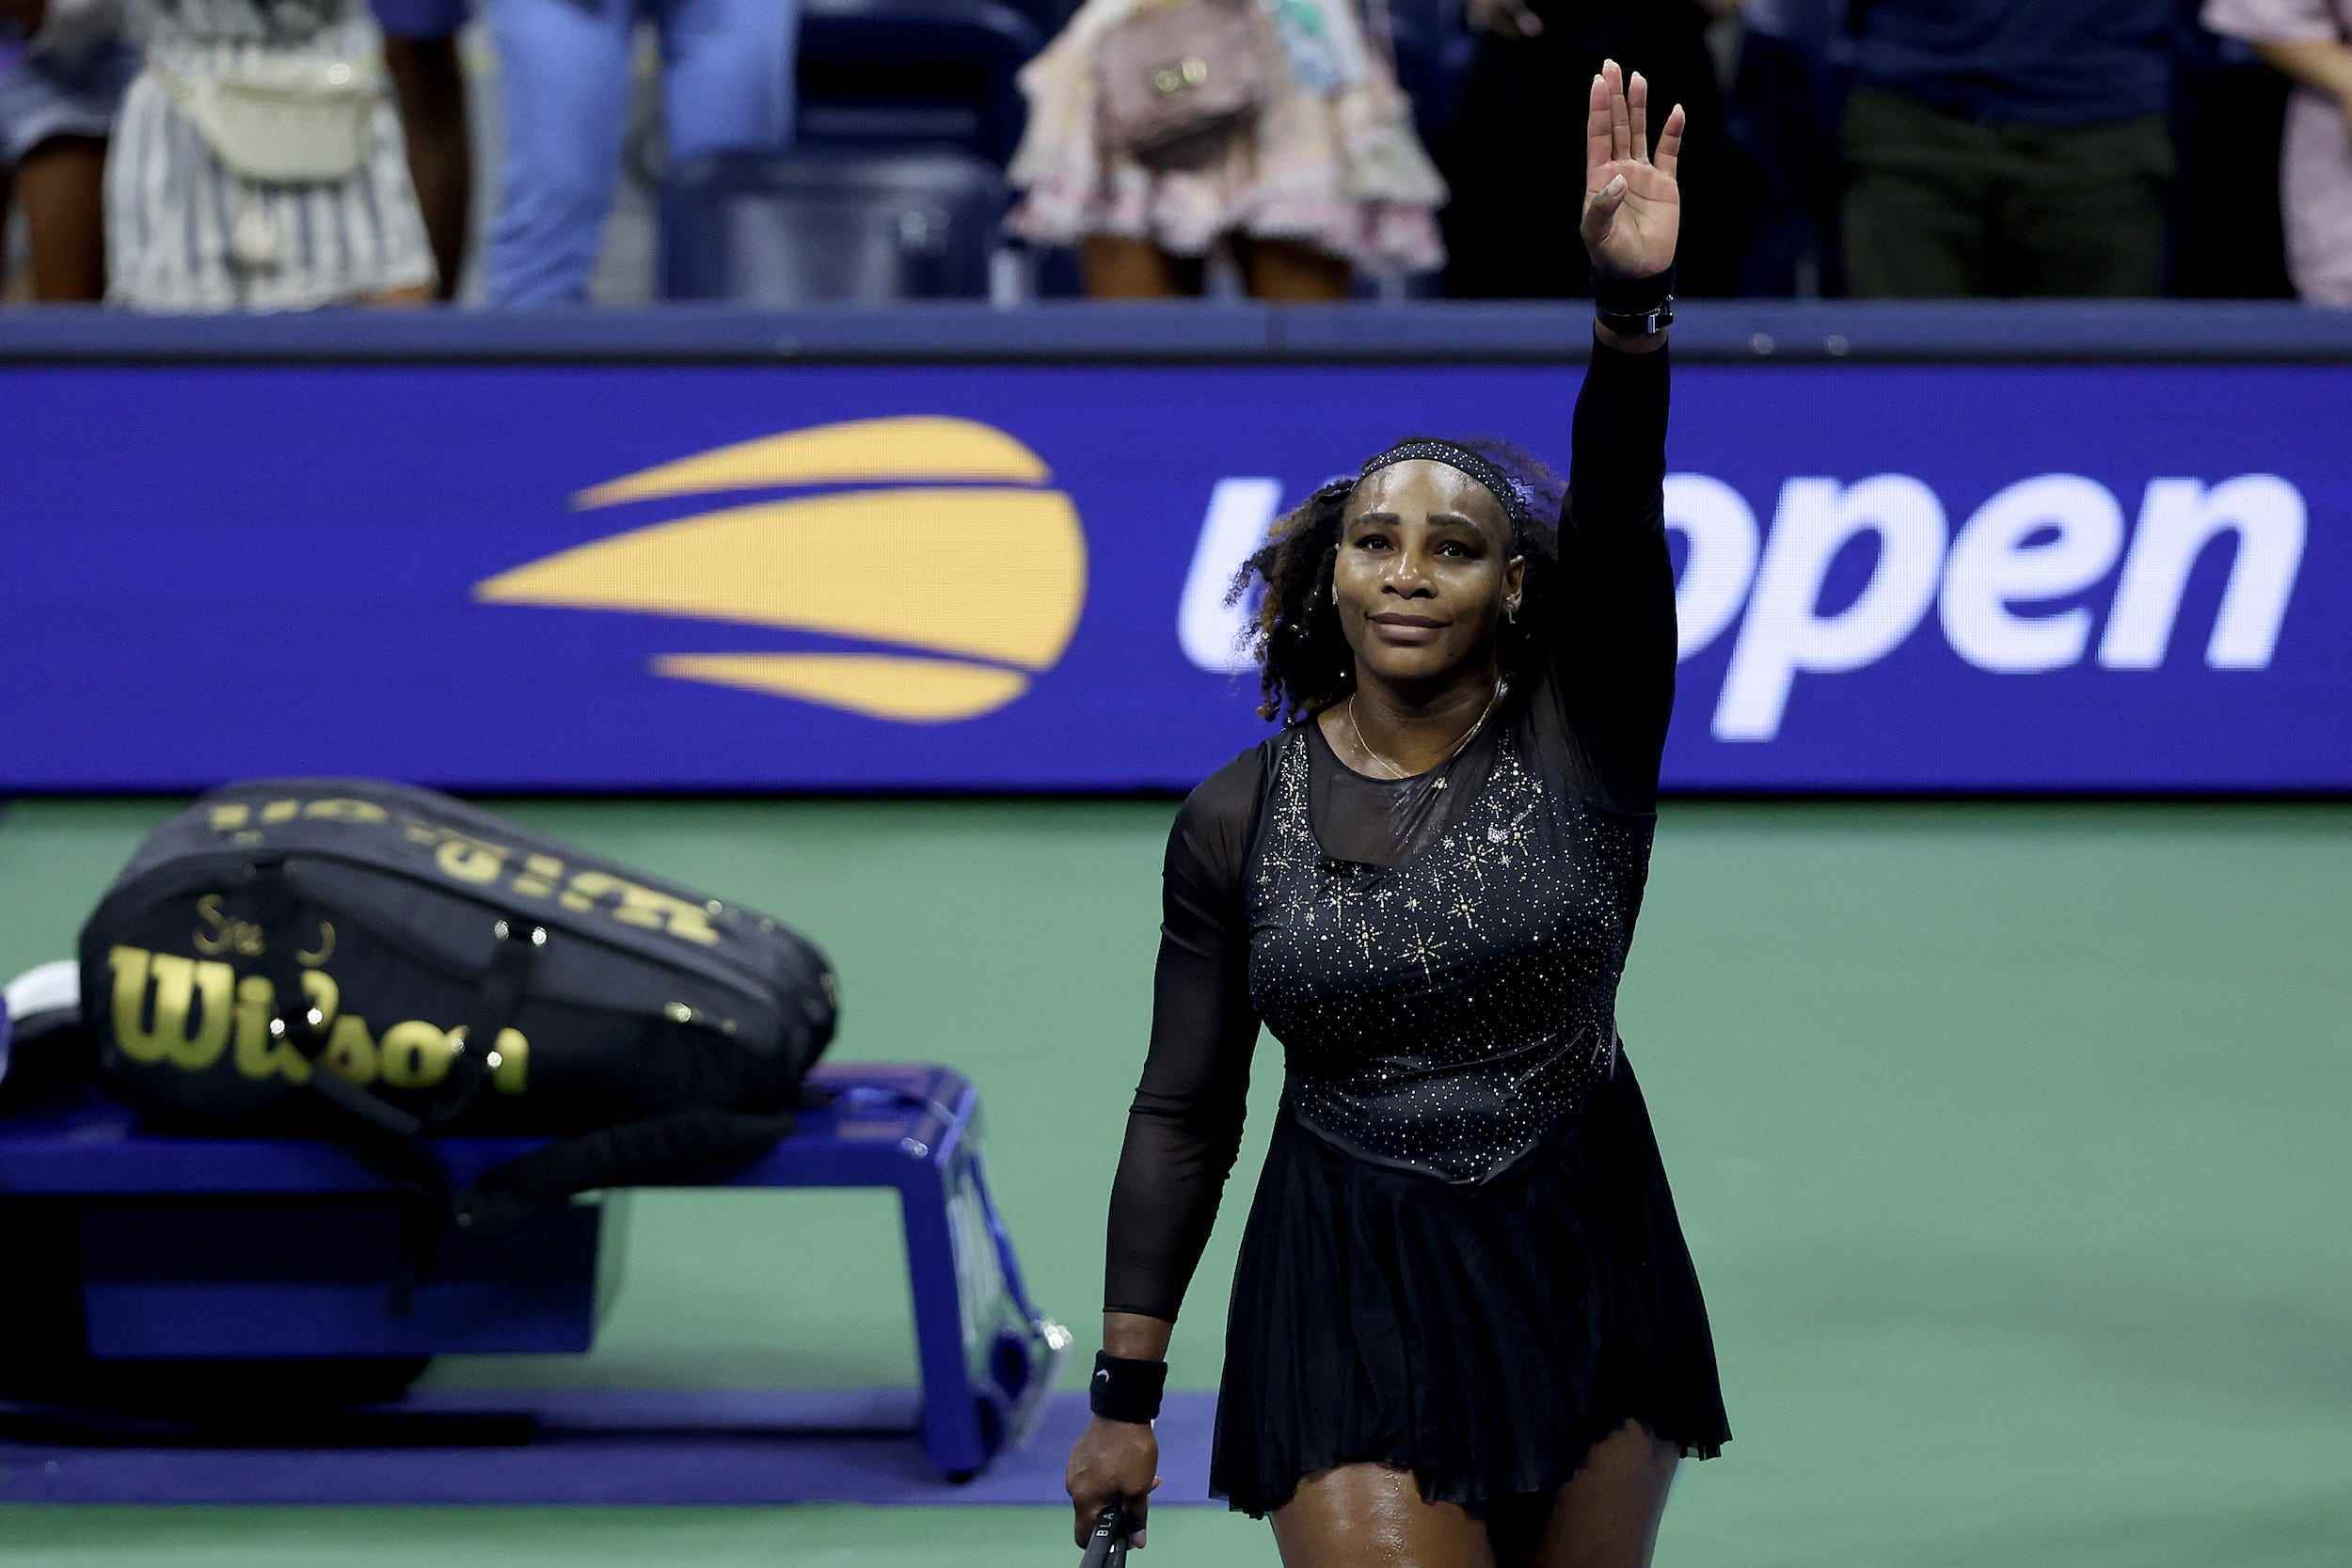 Serena Williams winkt der Menge nach ihrer Niederlage in der dritten Runde bei den US Open 2022 zu – wahrscheinlich dem letzten Turnier ihrer Karriere.